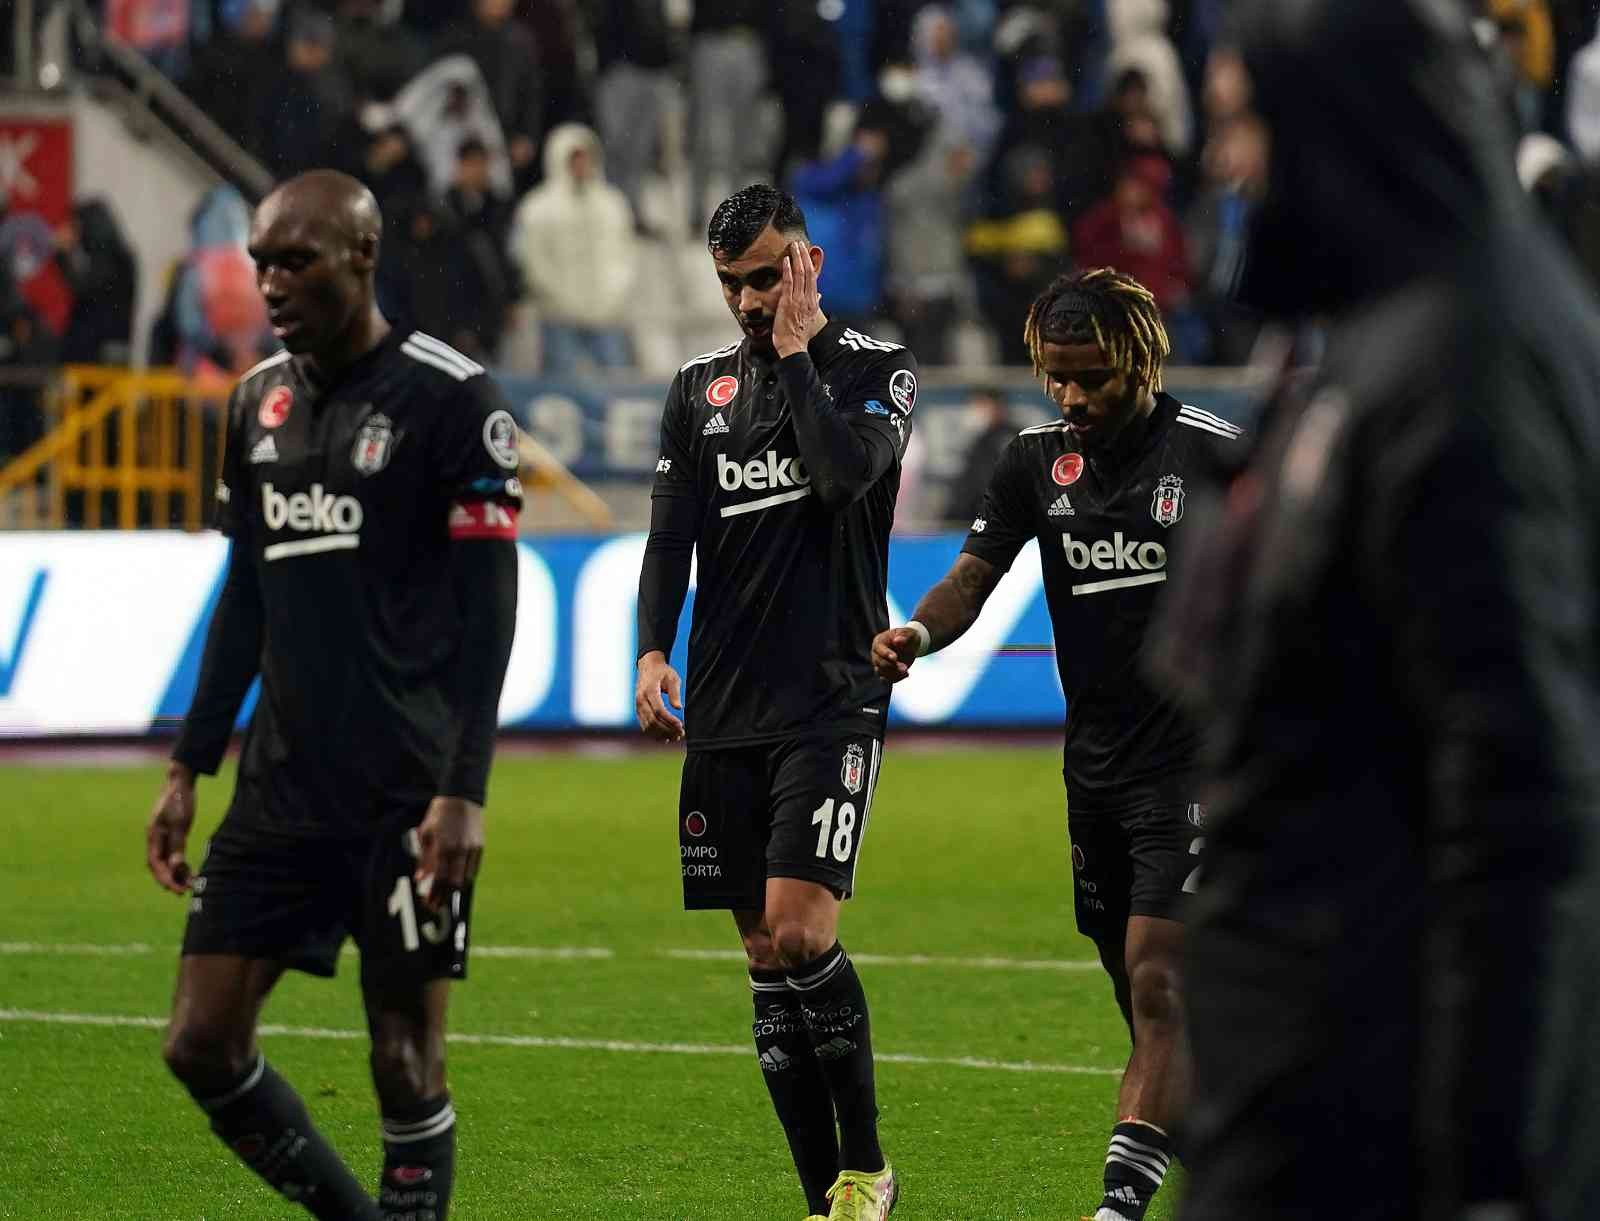 Beşiktaş’ta kötü gidişat sürüyor #istanbul